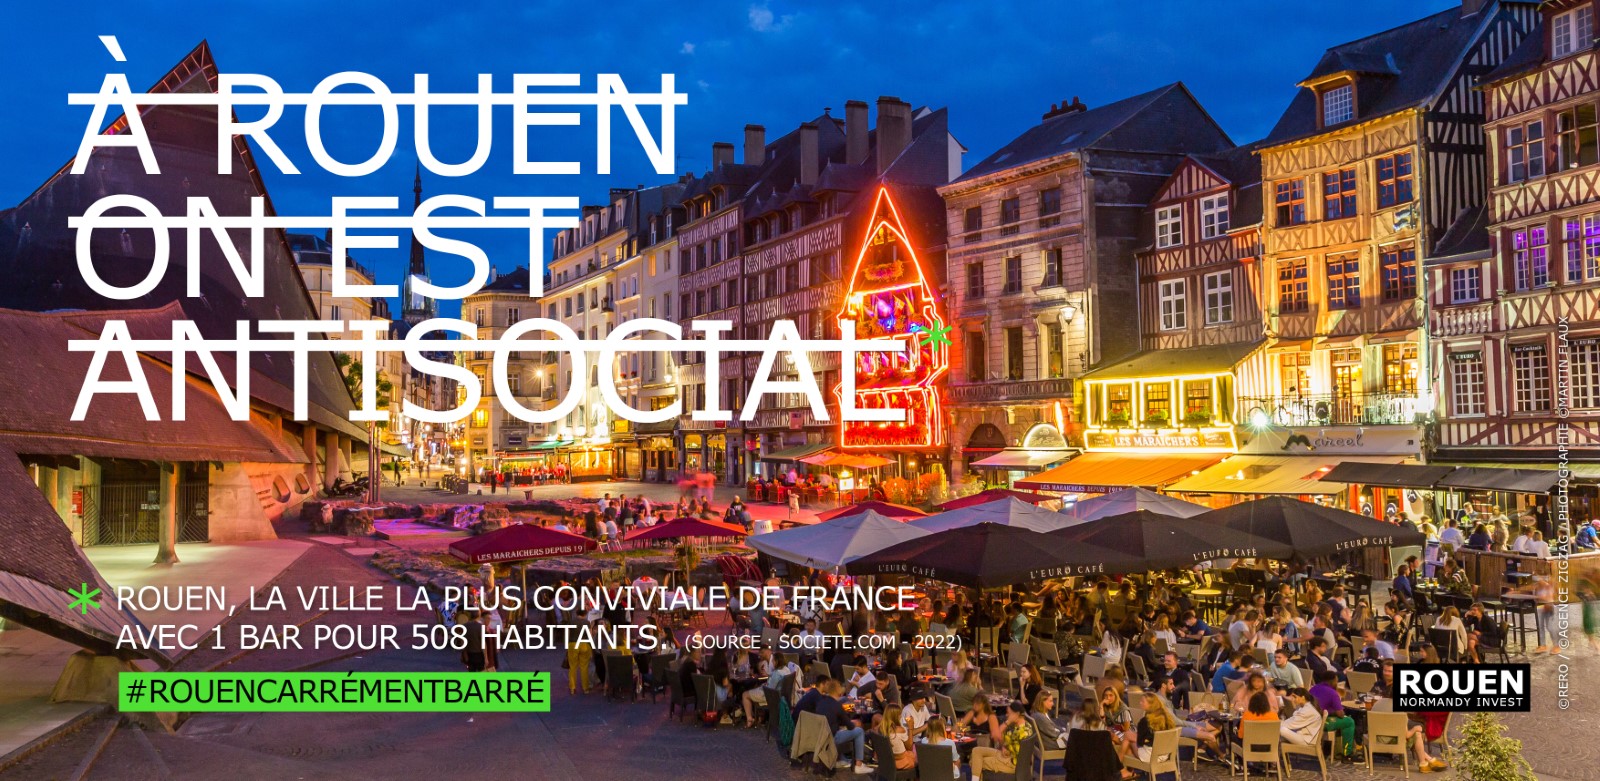 Campagne de communication Rouen Normandy Invest RERO - A Rouen on est antisocial